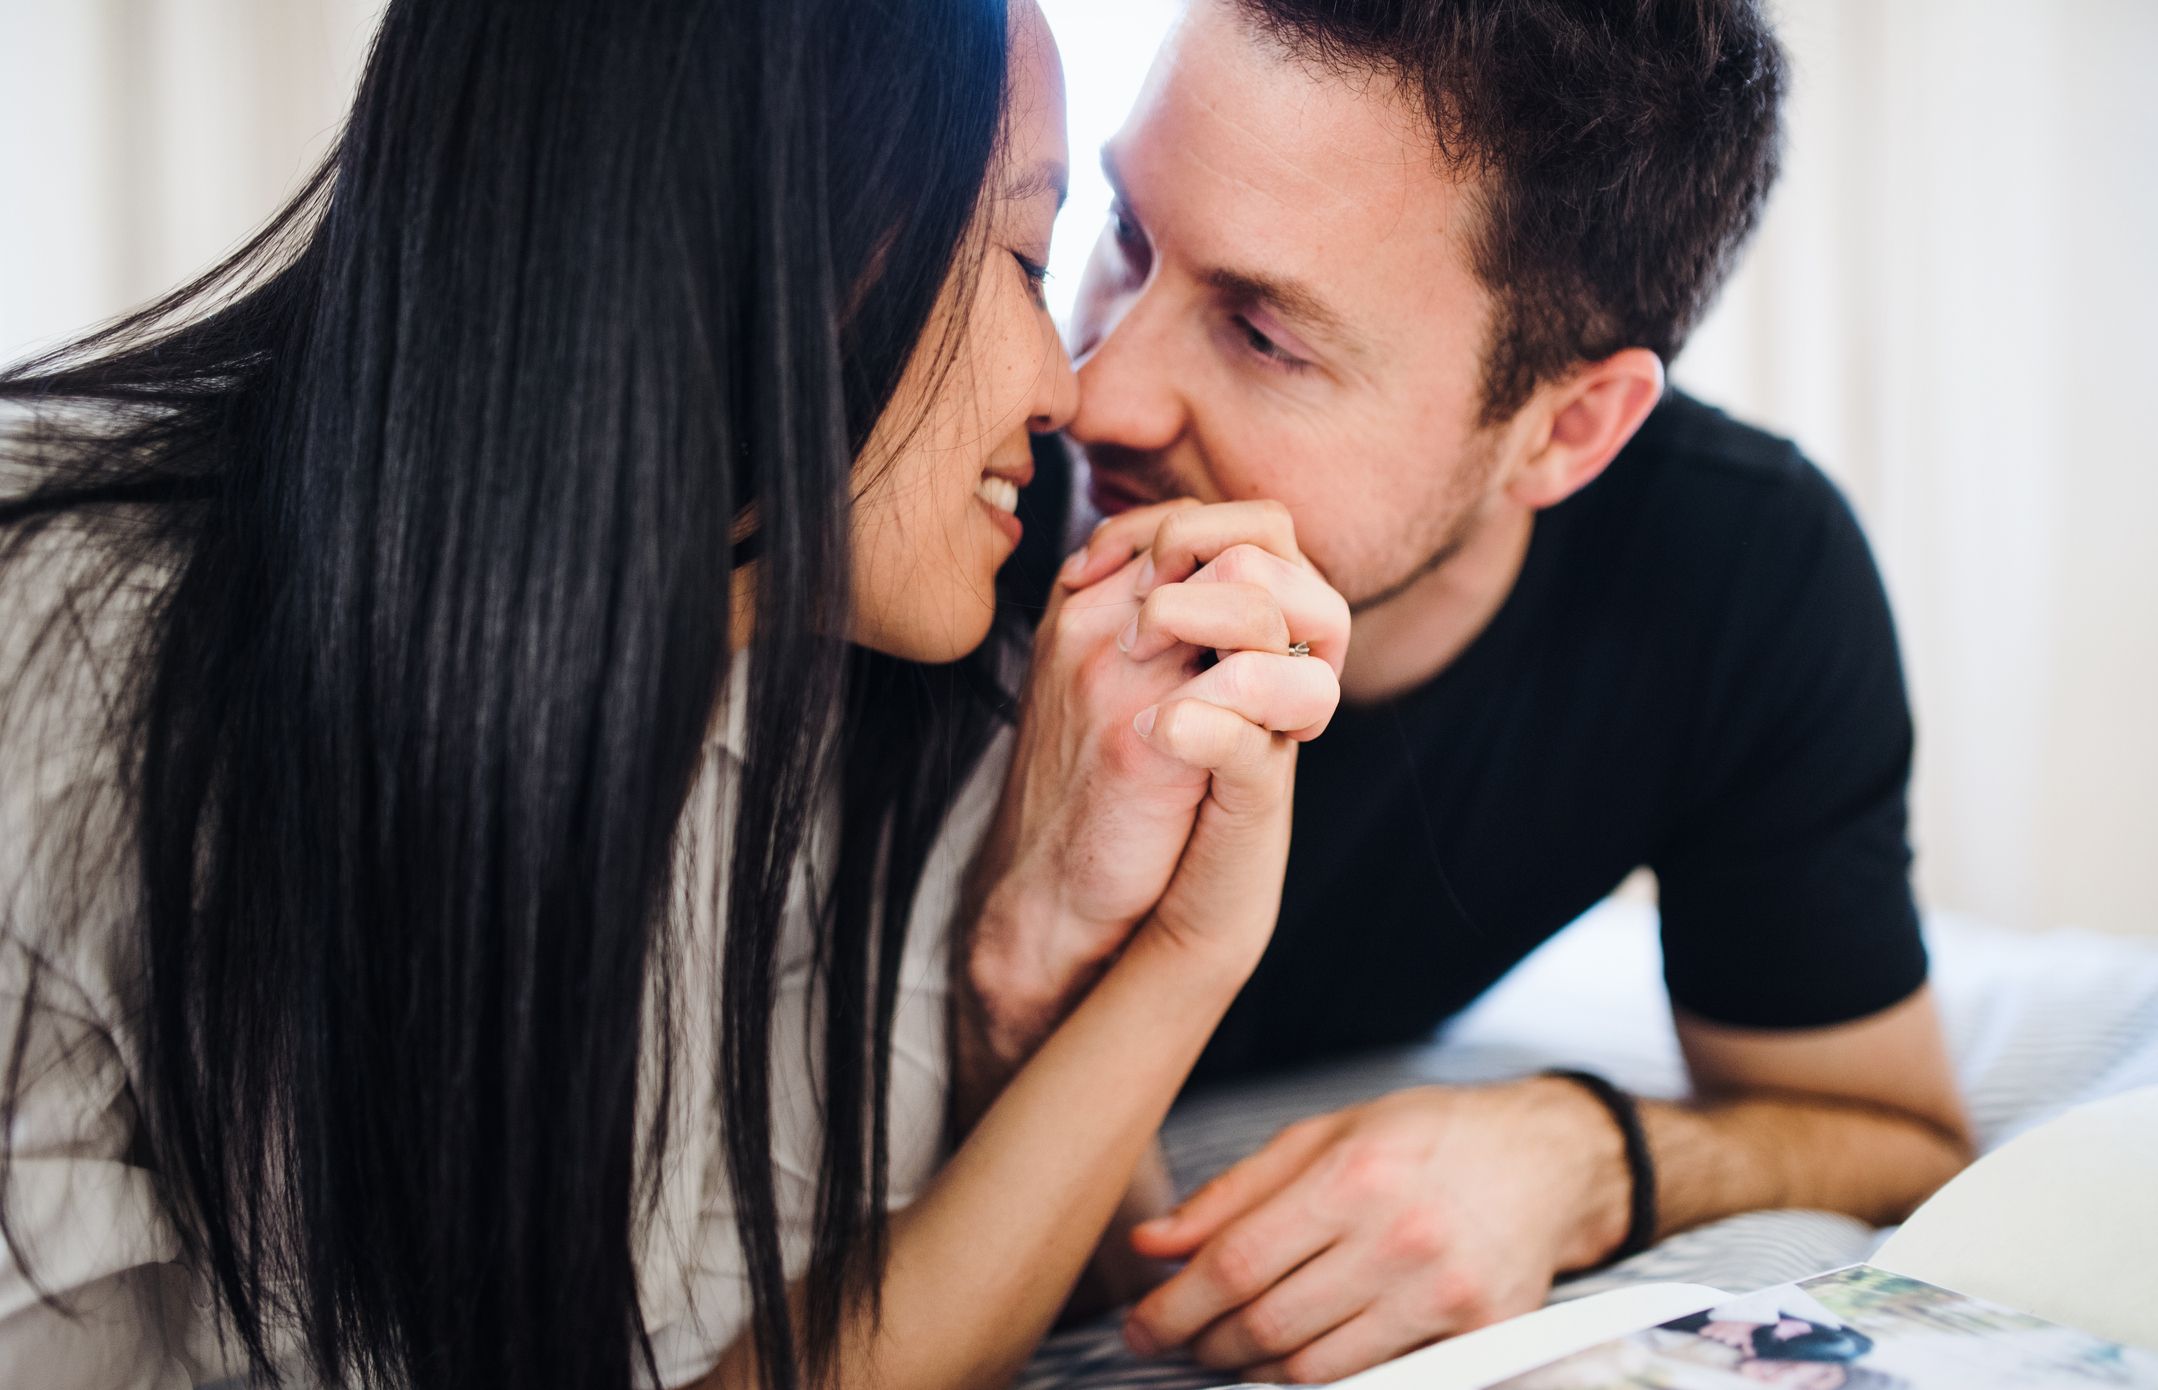 100 Fragen to Explore Your Partner's Sexual Boundaries